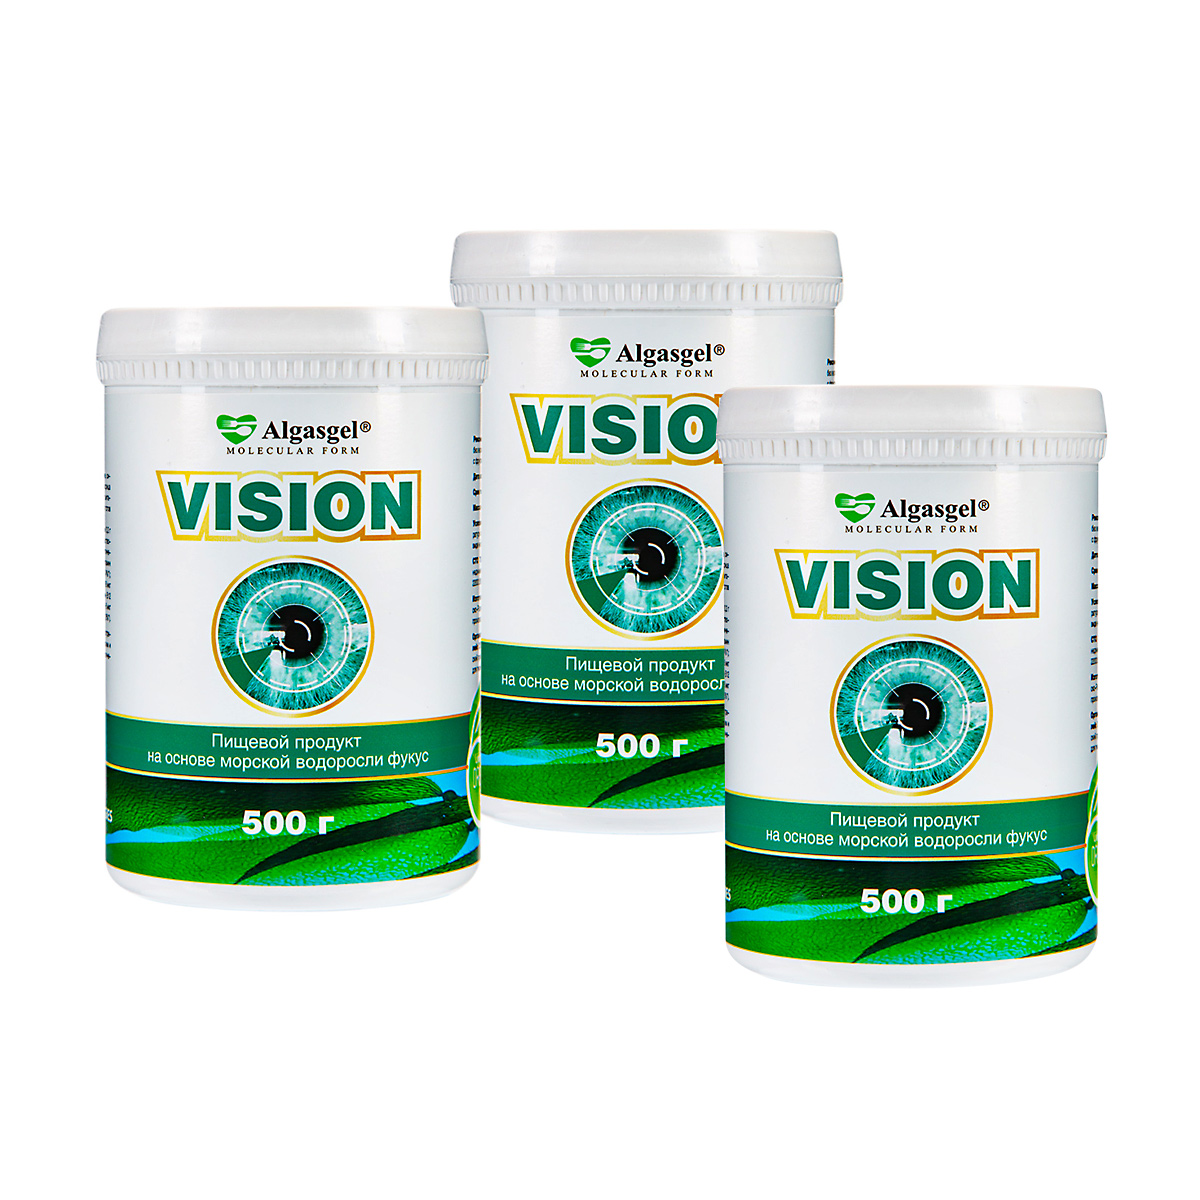 Algasgel Vision для здоровья глаз (2 уп. по 500 г + 1 в подарок) algasgel artro для здоровья суставов и мышц 500 г